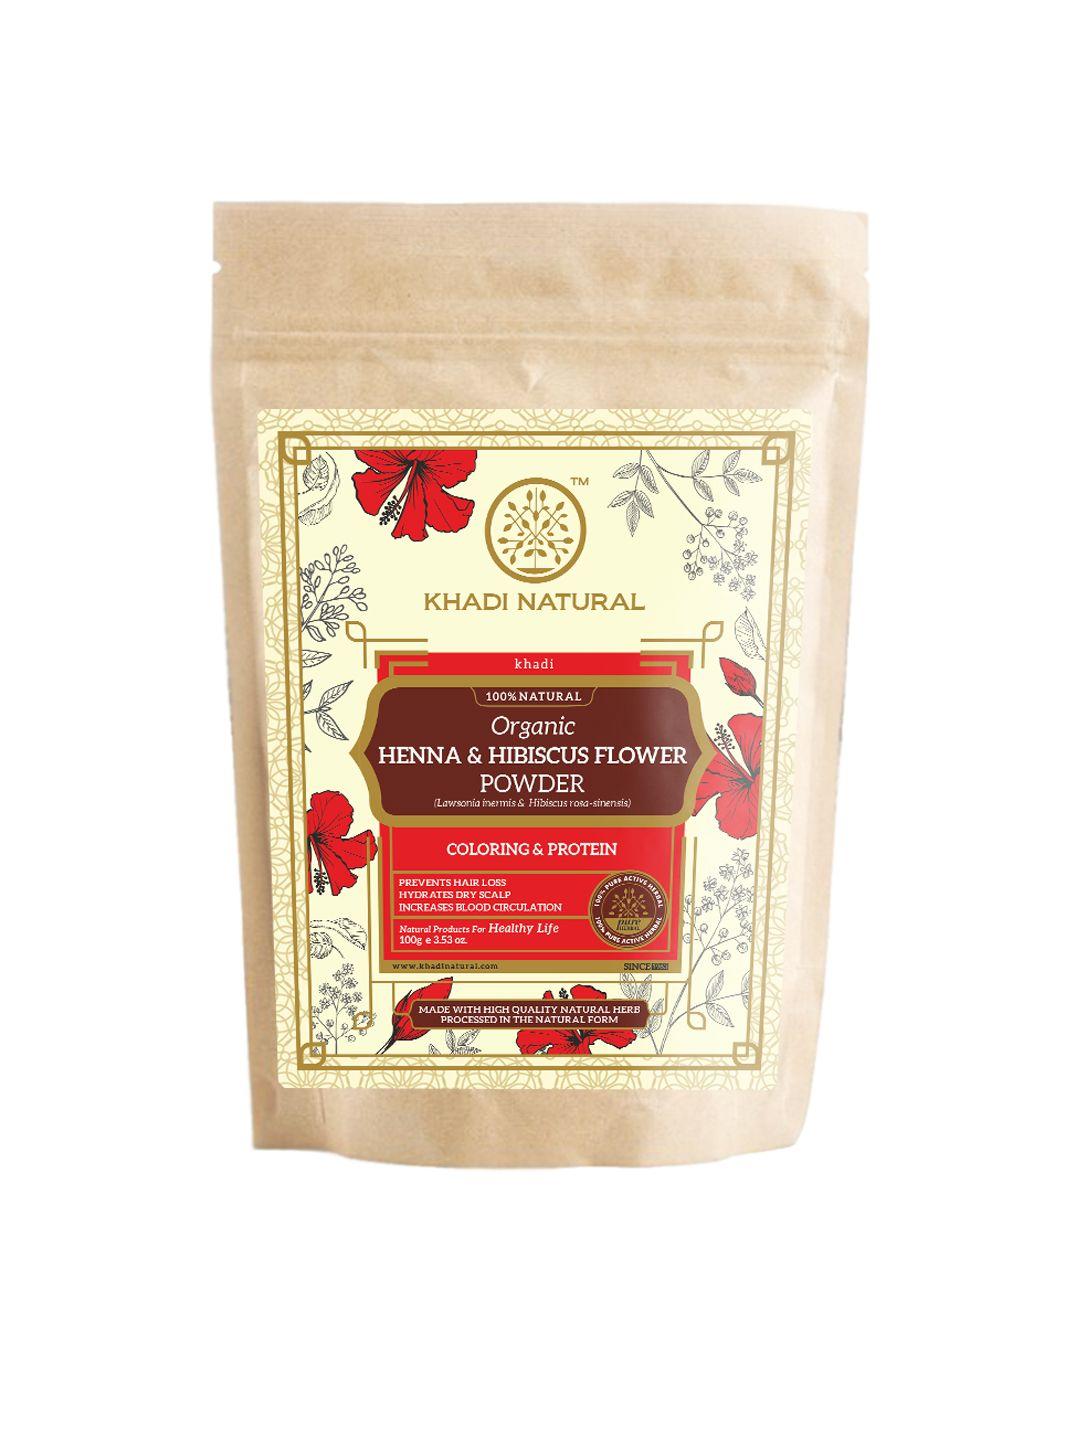 khadi natural henna & hibiscus flower organic powder- 100g